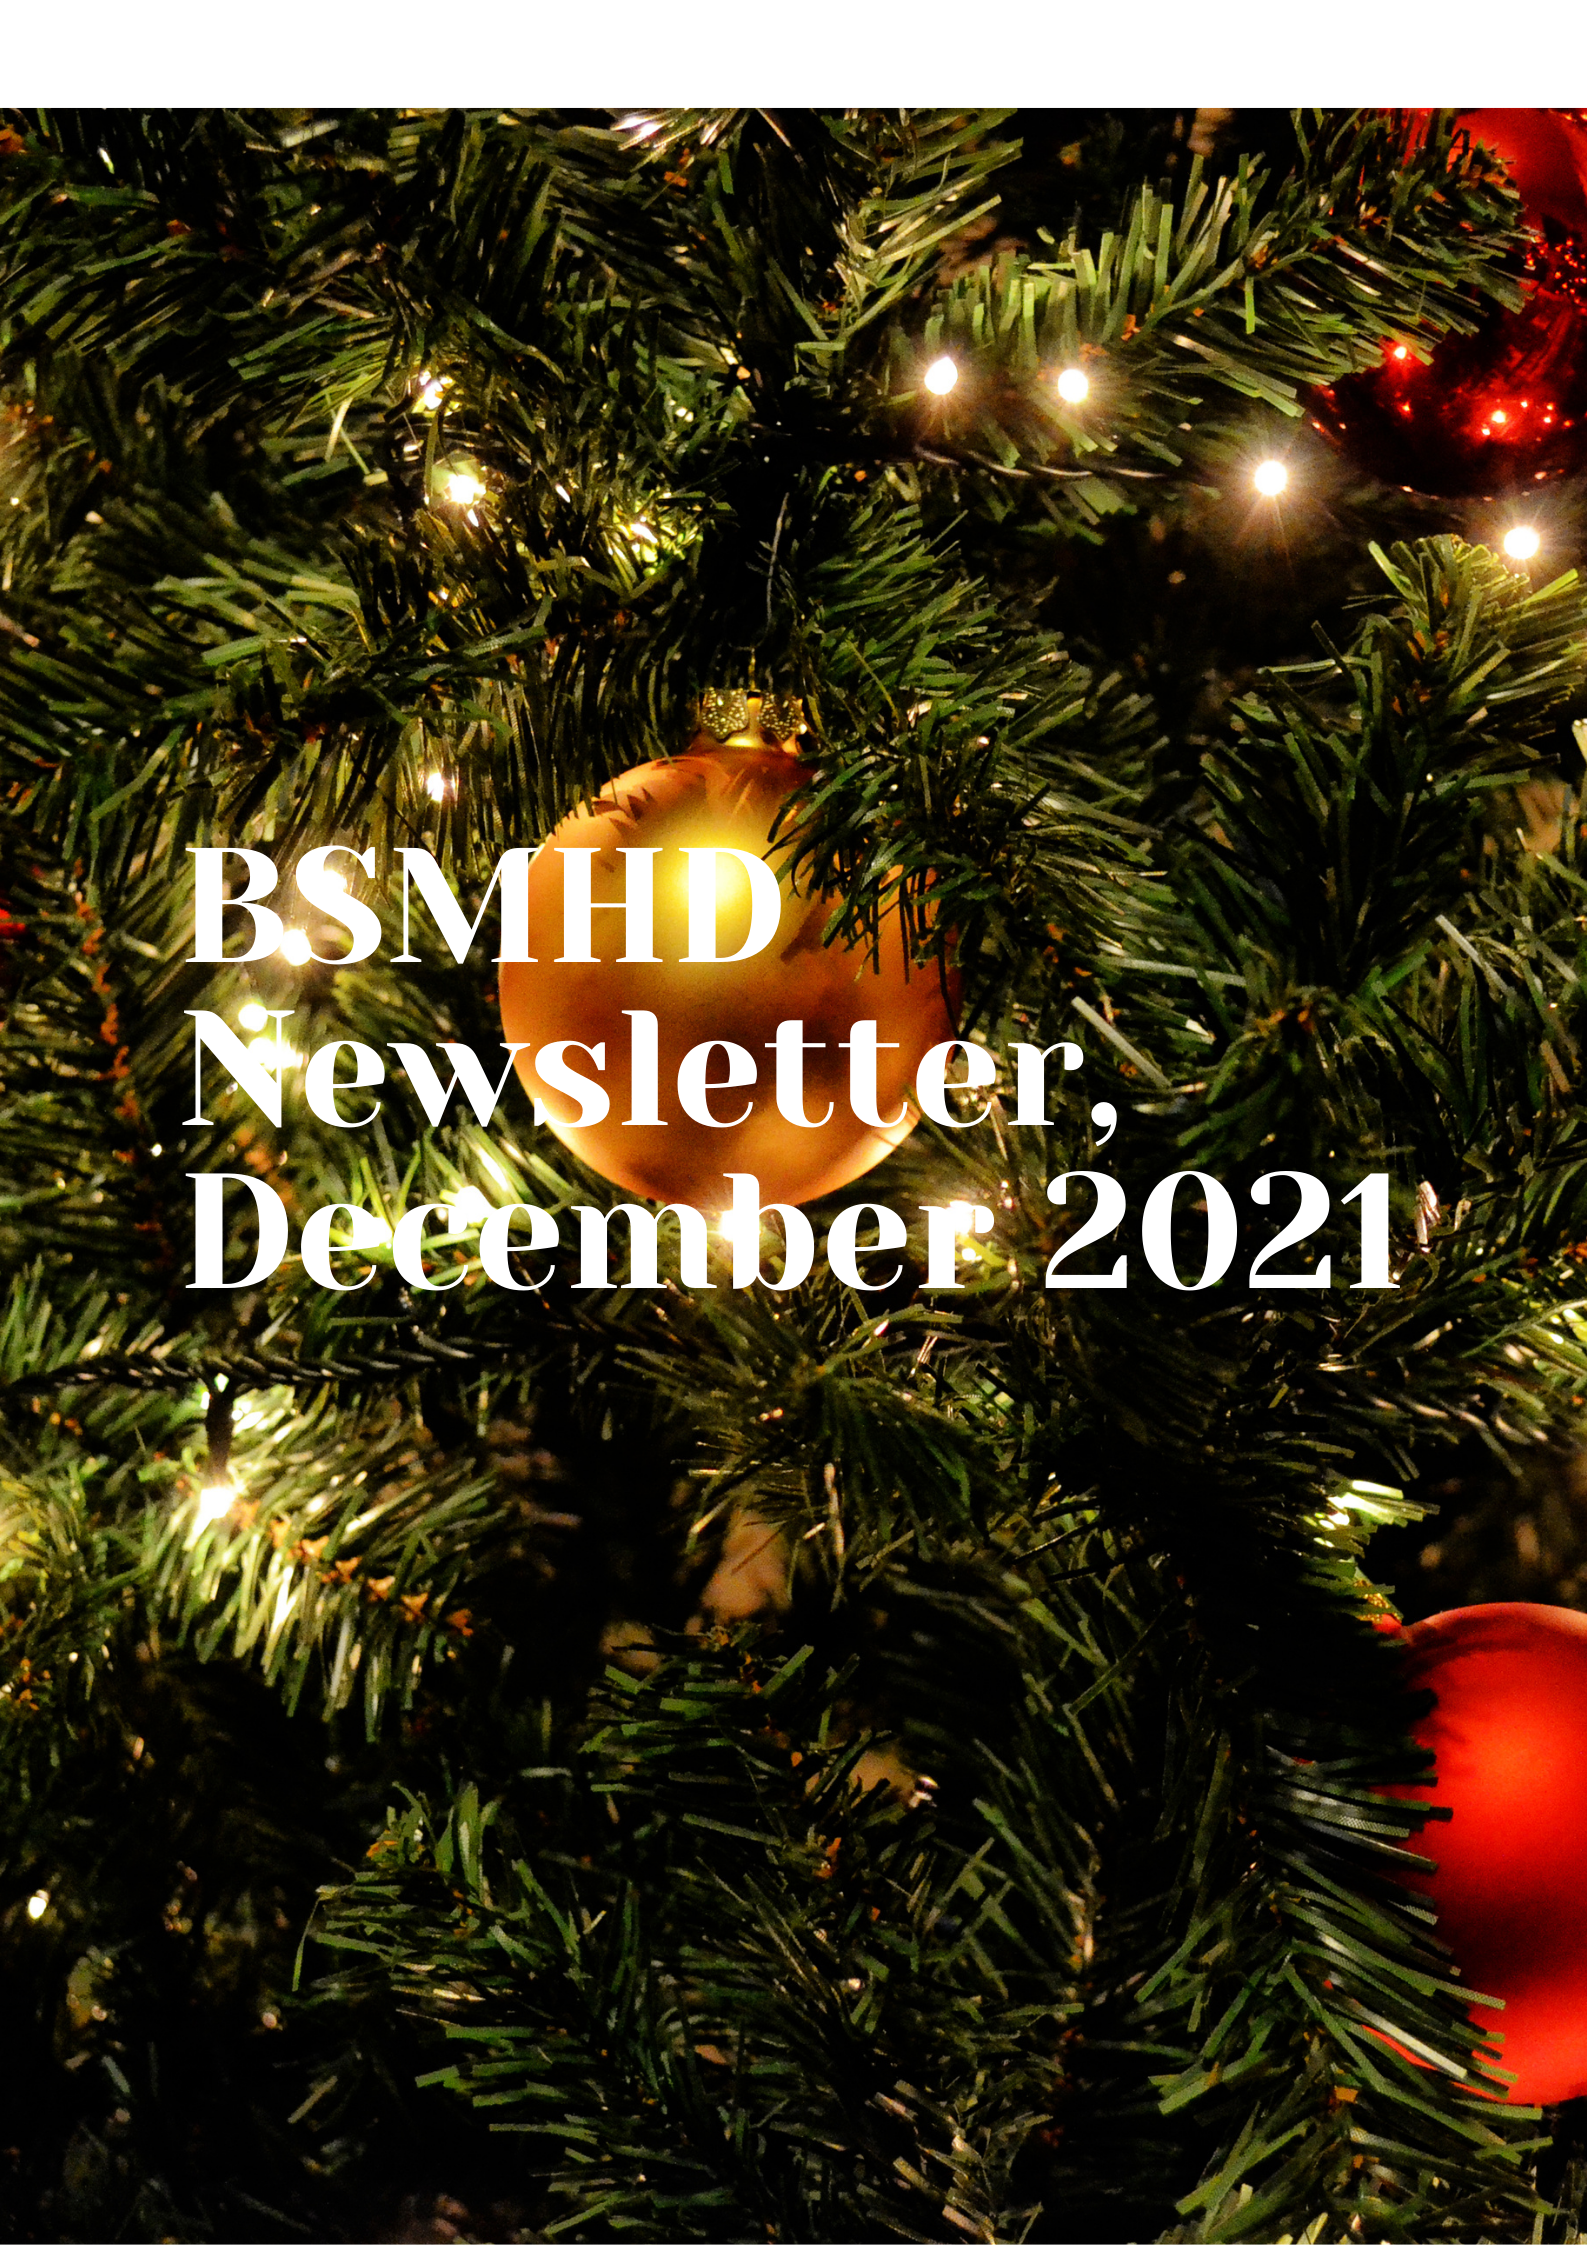 BSMHD Newsletter December 2021